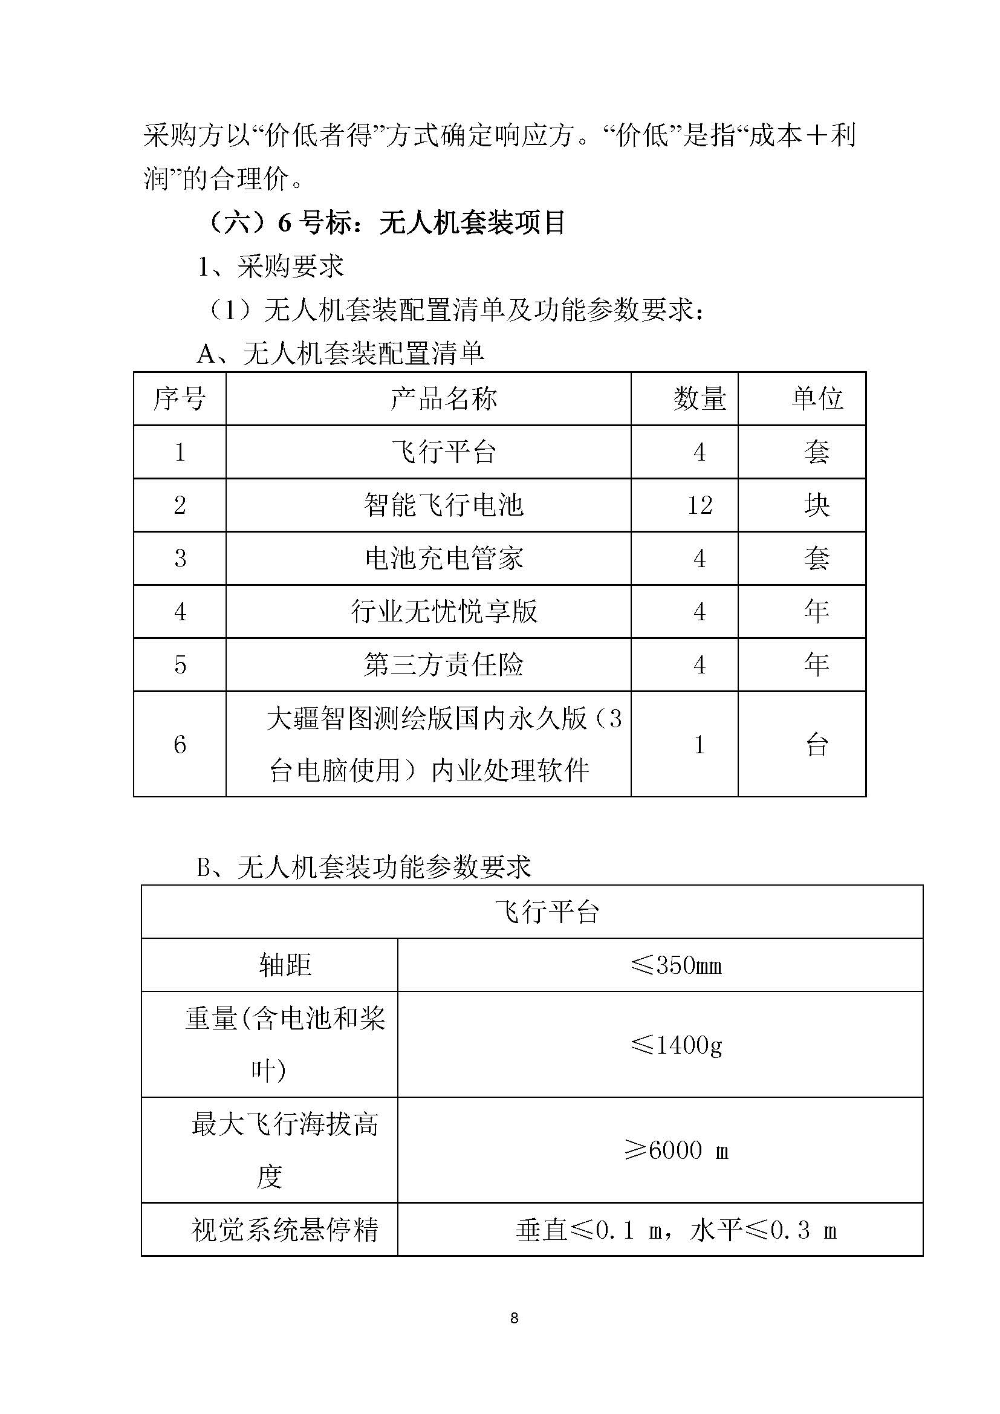 210420江门市国土测绘大队采购计算机设备维修和保养服务等项目采购公告 (8).jpg